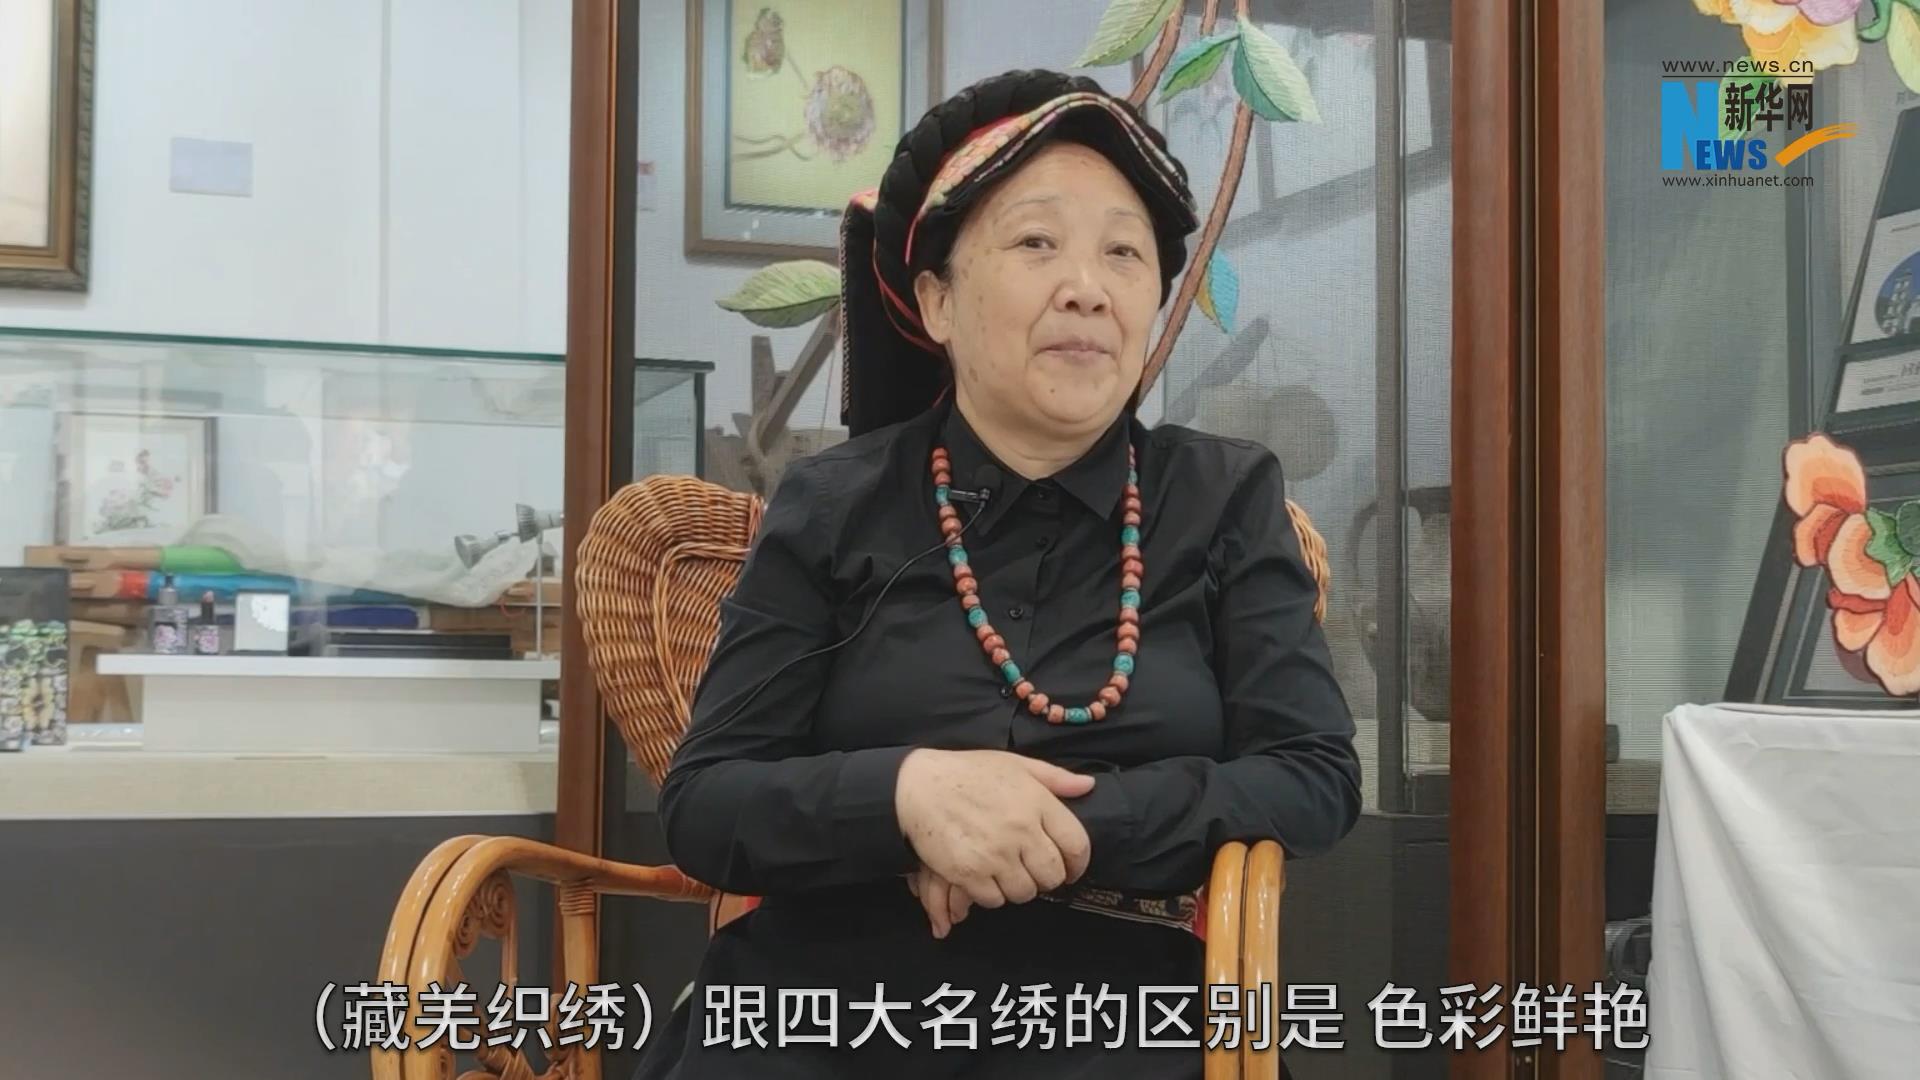 藏羌织绣可以说是一本无字的情书。